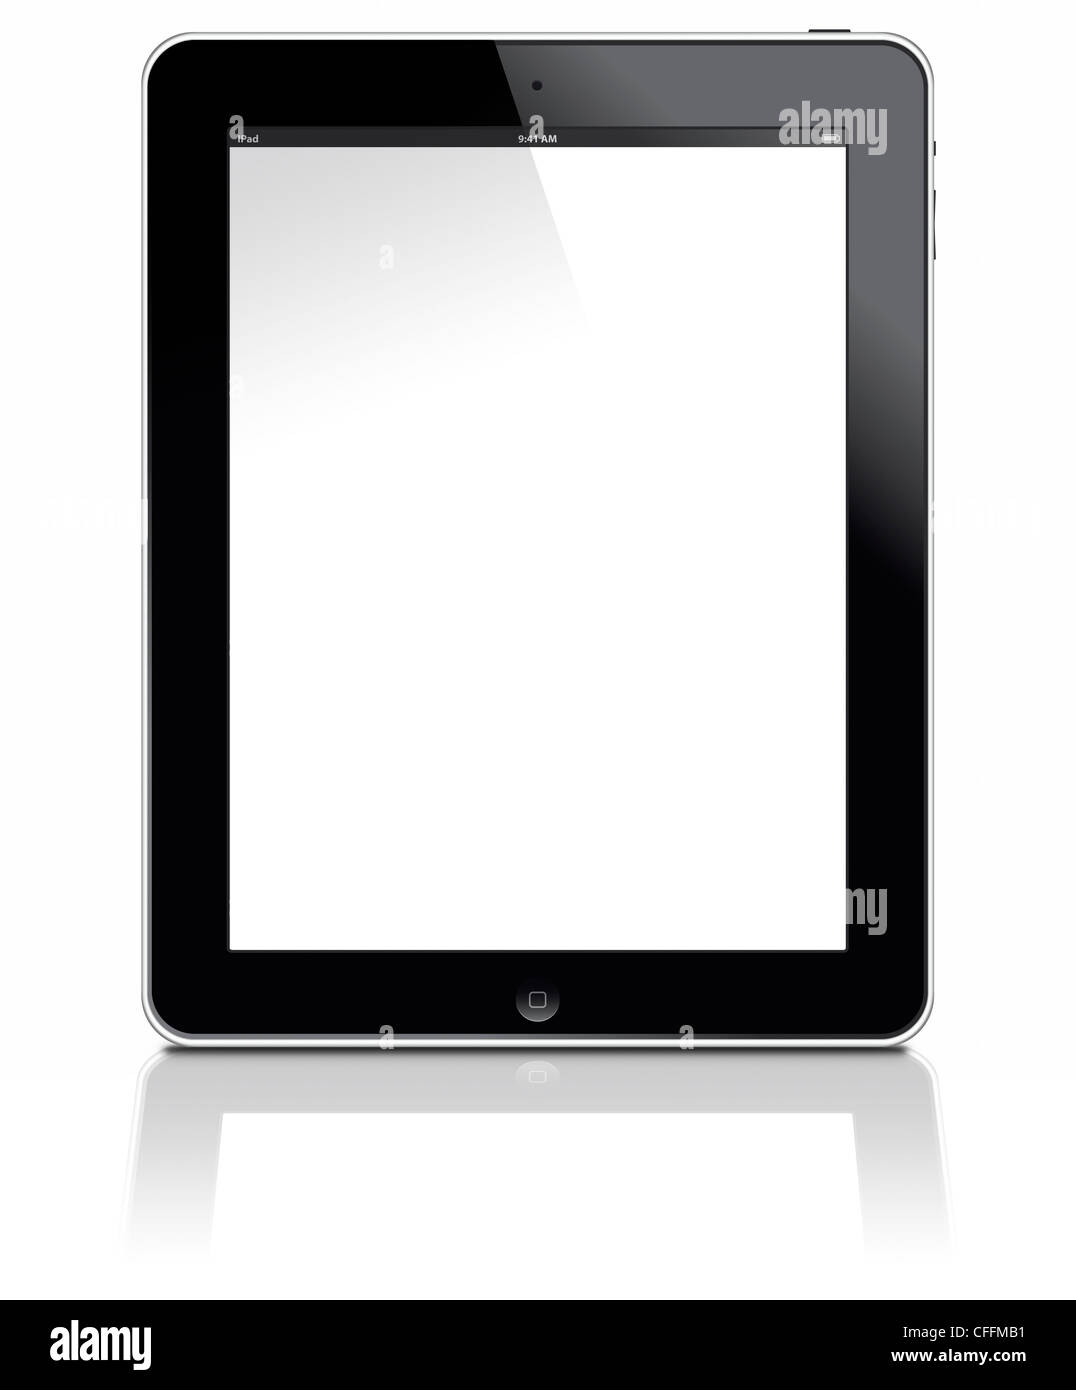 Münster, Deutschland - 12. März 2012: Bilder zeigt das Apple Ipad 3 digitale Tablet PC mit Multi-Touch-Screen. Stockfoto